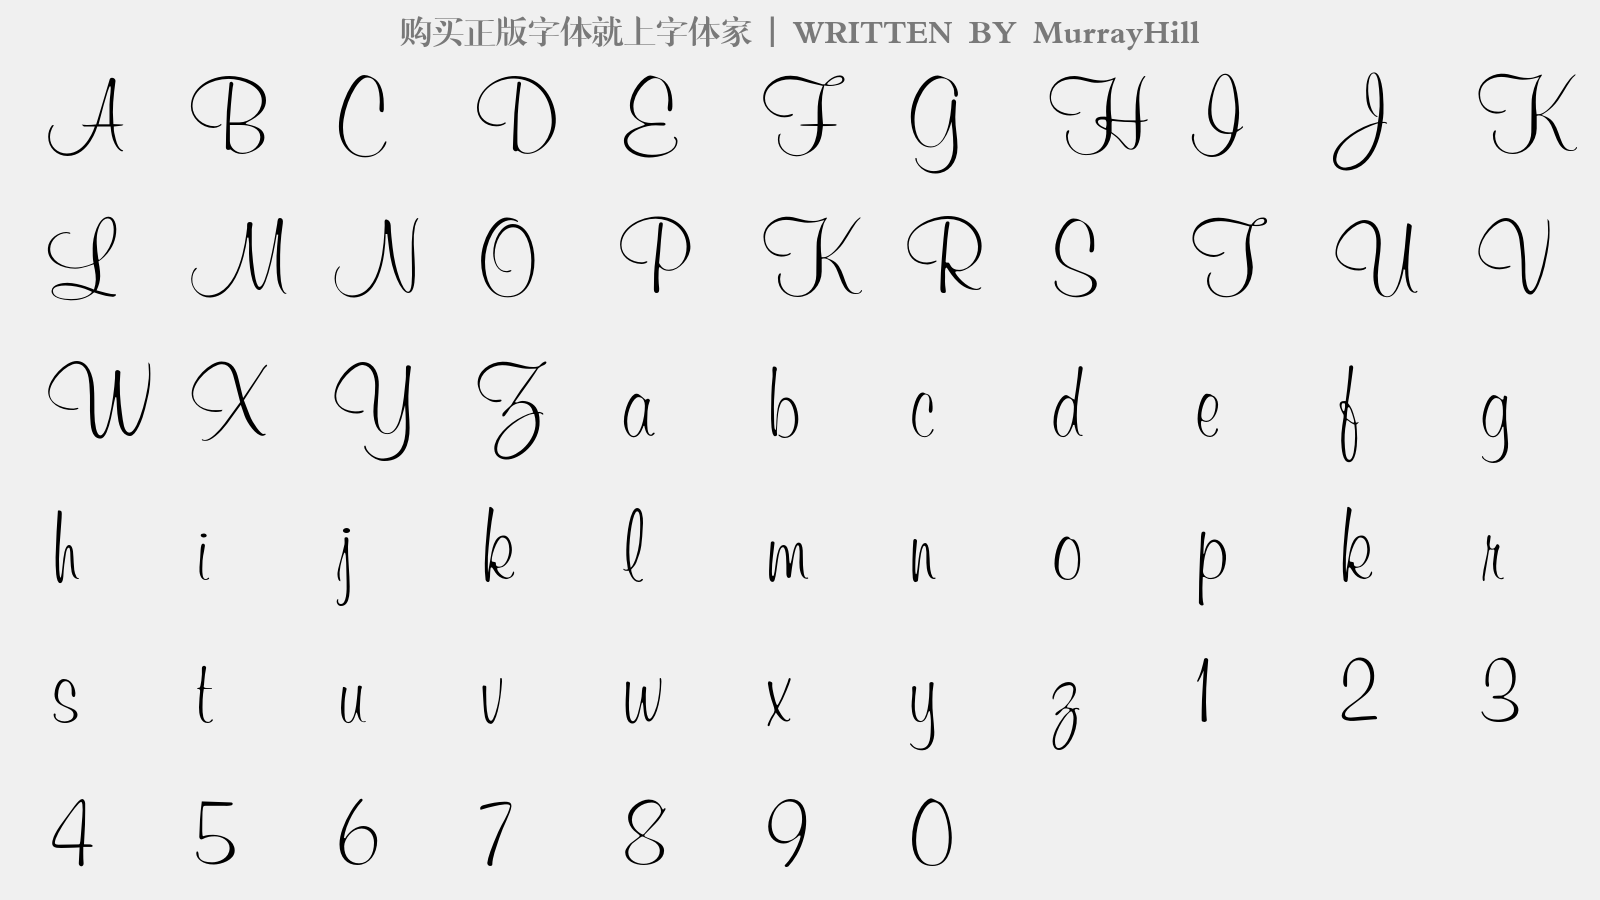 MurrayHill - 大写字母/小写字母/数字